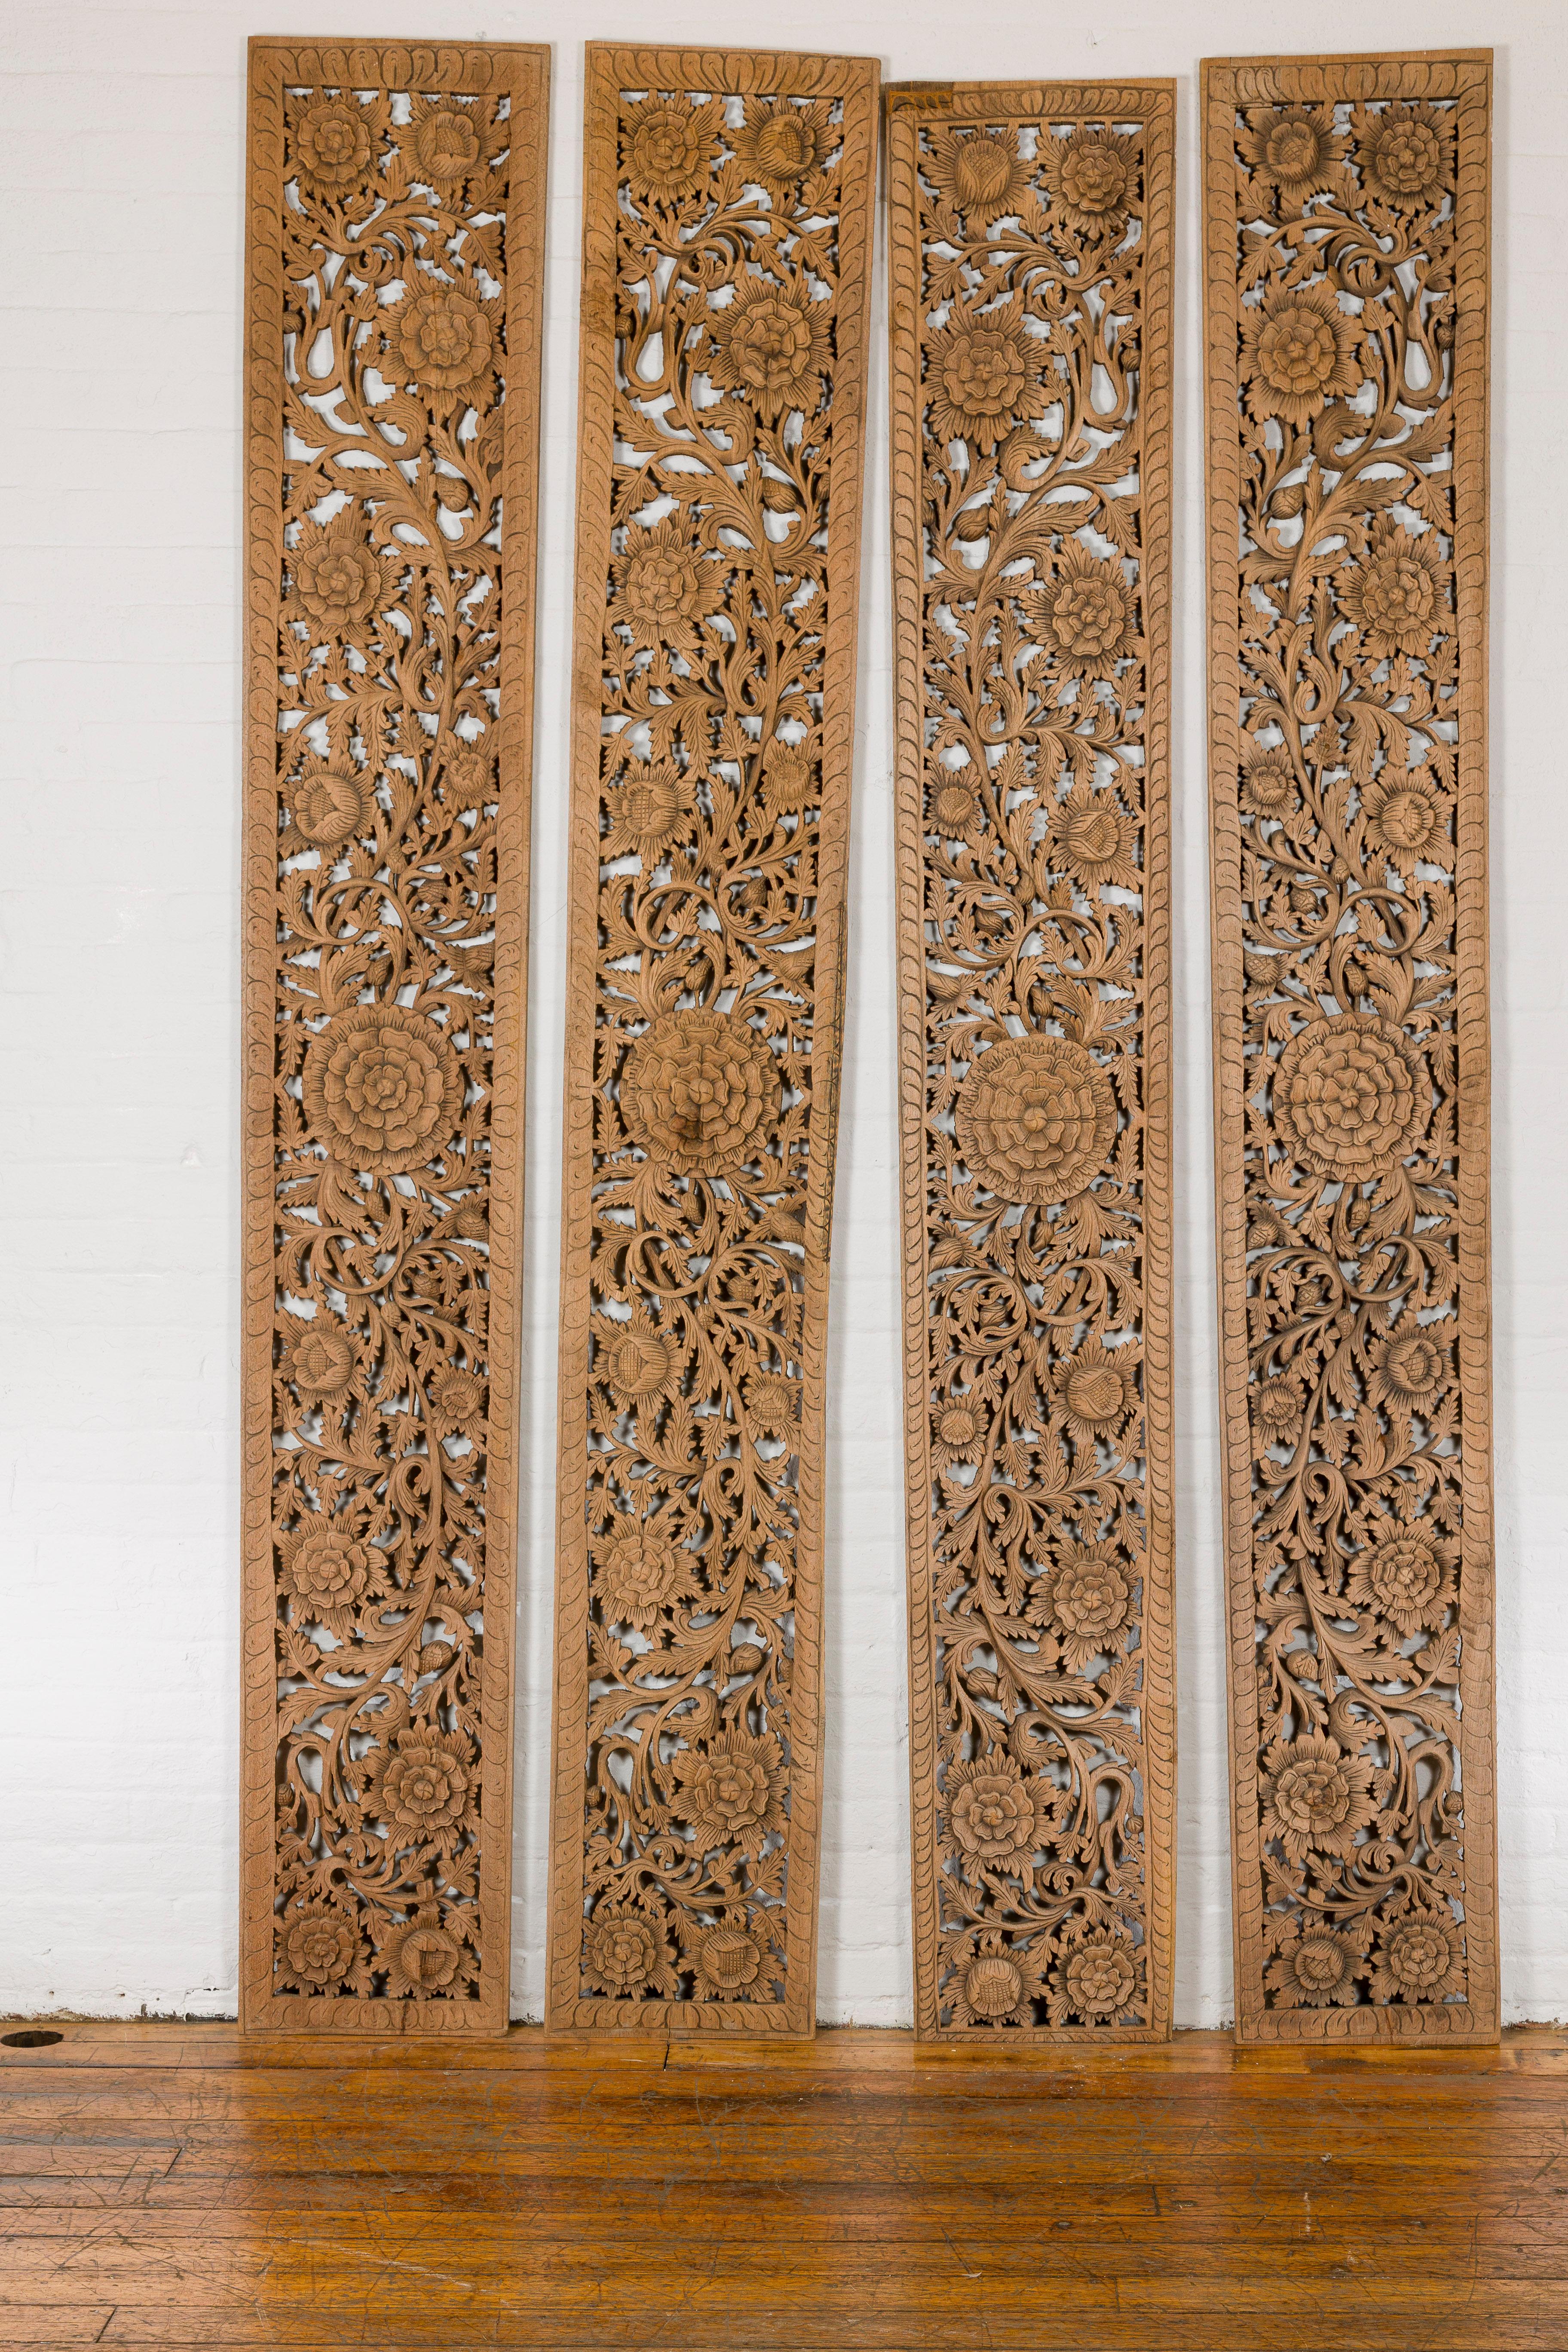 Un ensemble de quatre panneaux architecturaux en bois sculpté du milieu du 20e siècle avec de grandes fleurs et des feuillages en spirale. Plongez dans la complexité artistique de cet ensemble de quatre panneaux architecturaux en bois sculpté datant